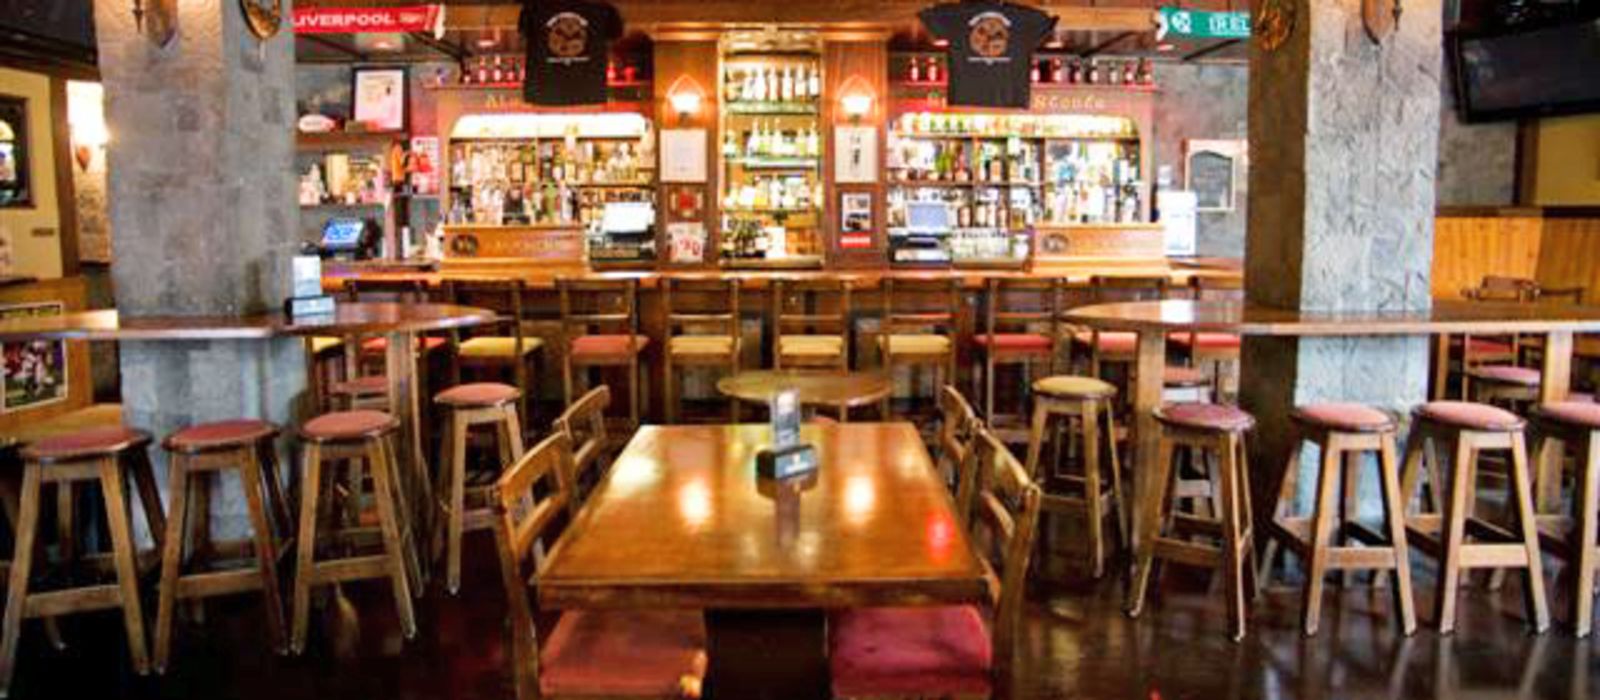 Chieftain Irish Pub and Restaurant